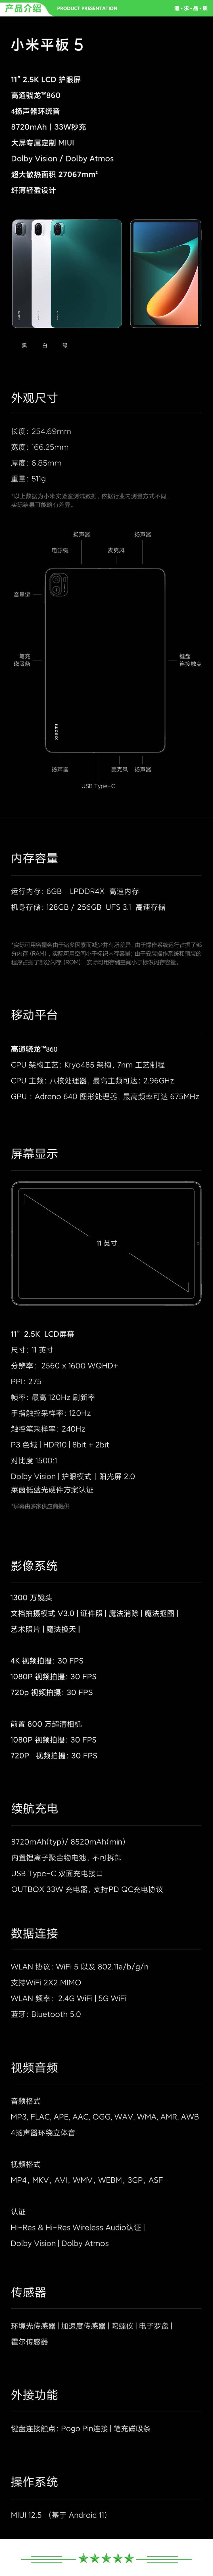 小米 xiaomi 平板5 平板电脑（11英寸2.5K高清 120Hz 骁龙860 6G+256GB 33W快充 杜比影音娱乐办公 绿色）+ 键盘套装.jpg